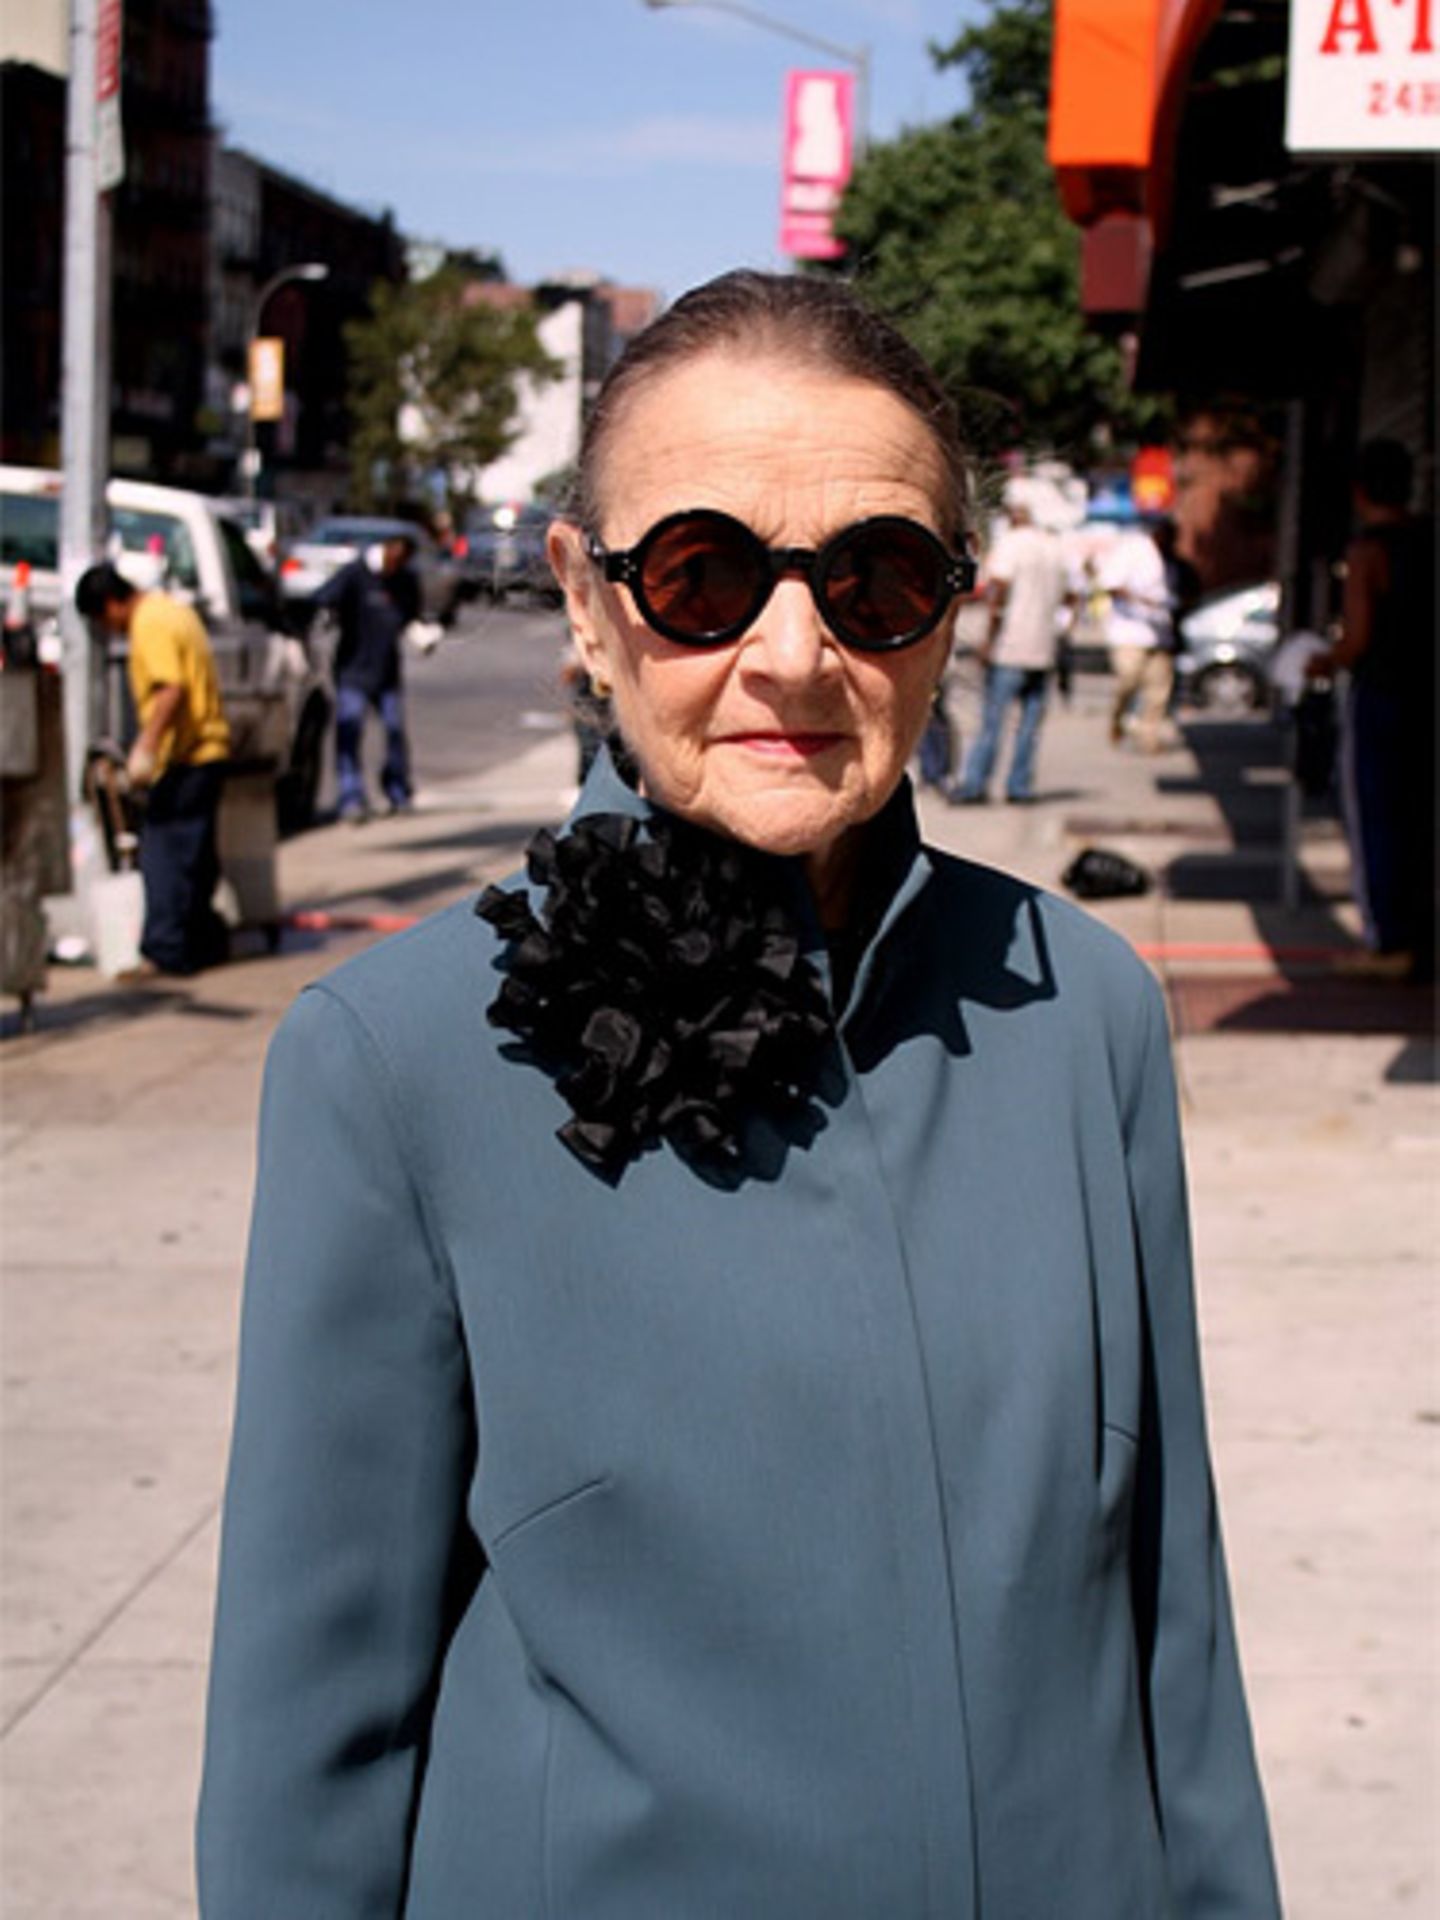 Ihre streng geschnittene graue Jacke verziert diese New Yorkerin mit einer auffälligen schwarzen Rüschenbrosche.